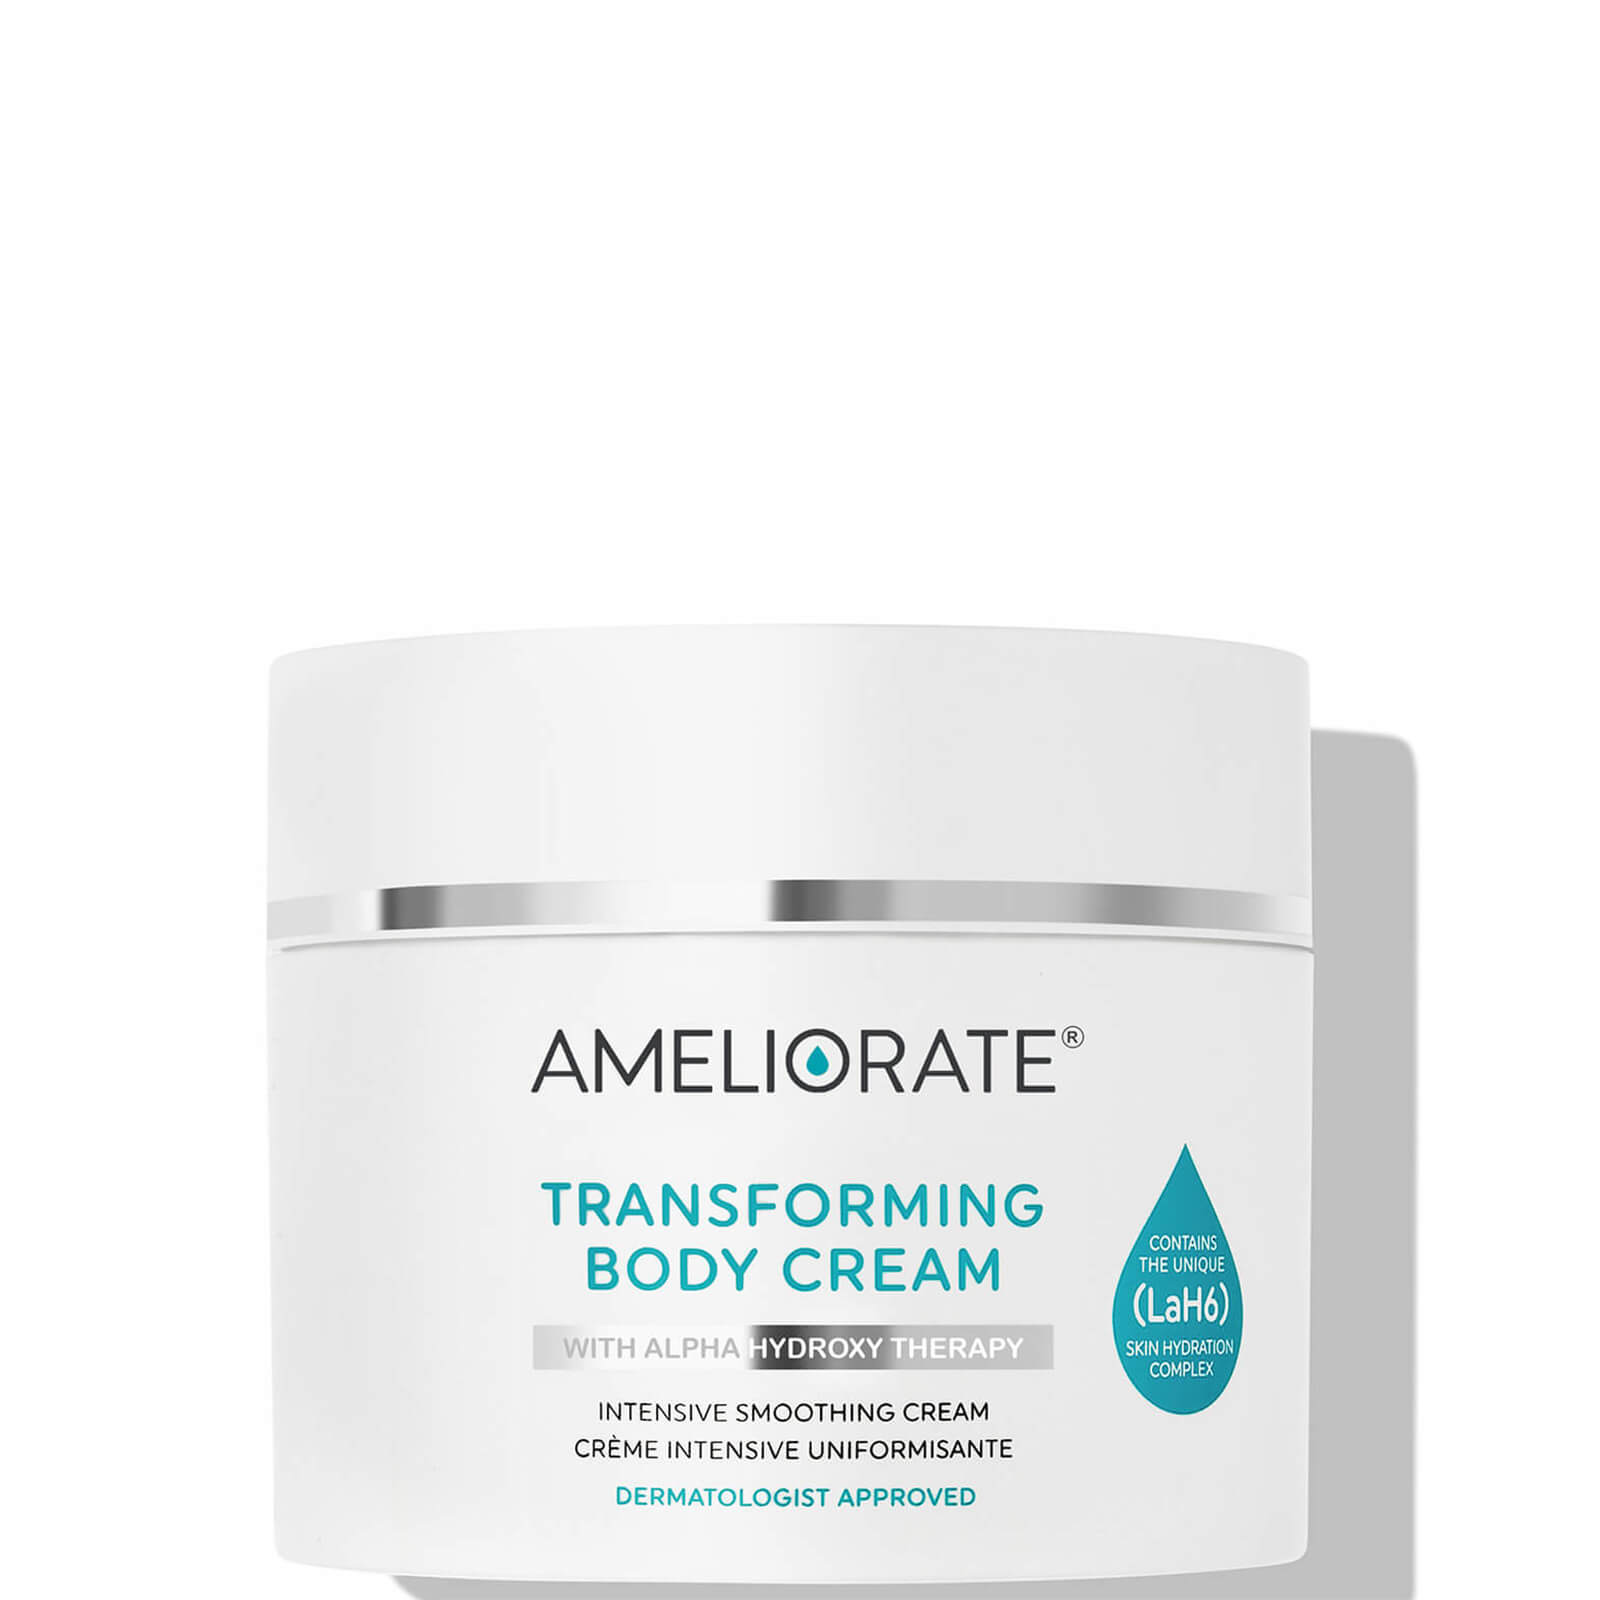 AMELIORATE Transforming Body Cream 225ml